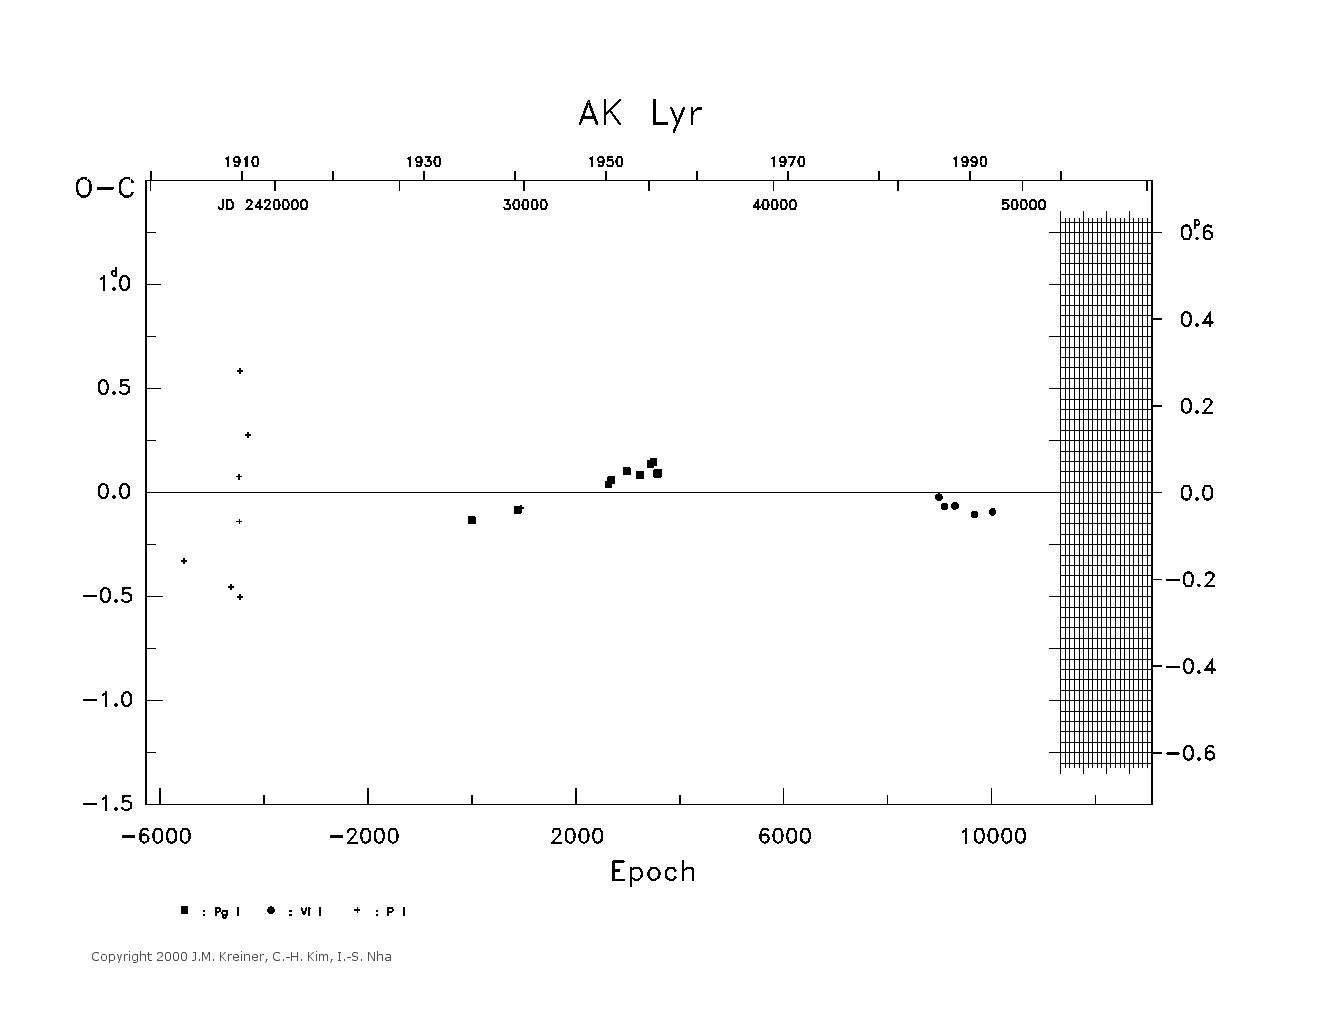 [IMAGE: large AK LYR O-C diagram]